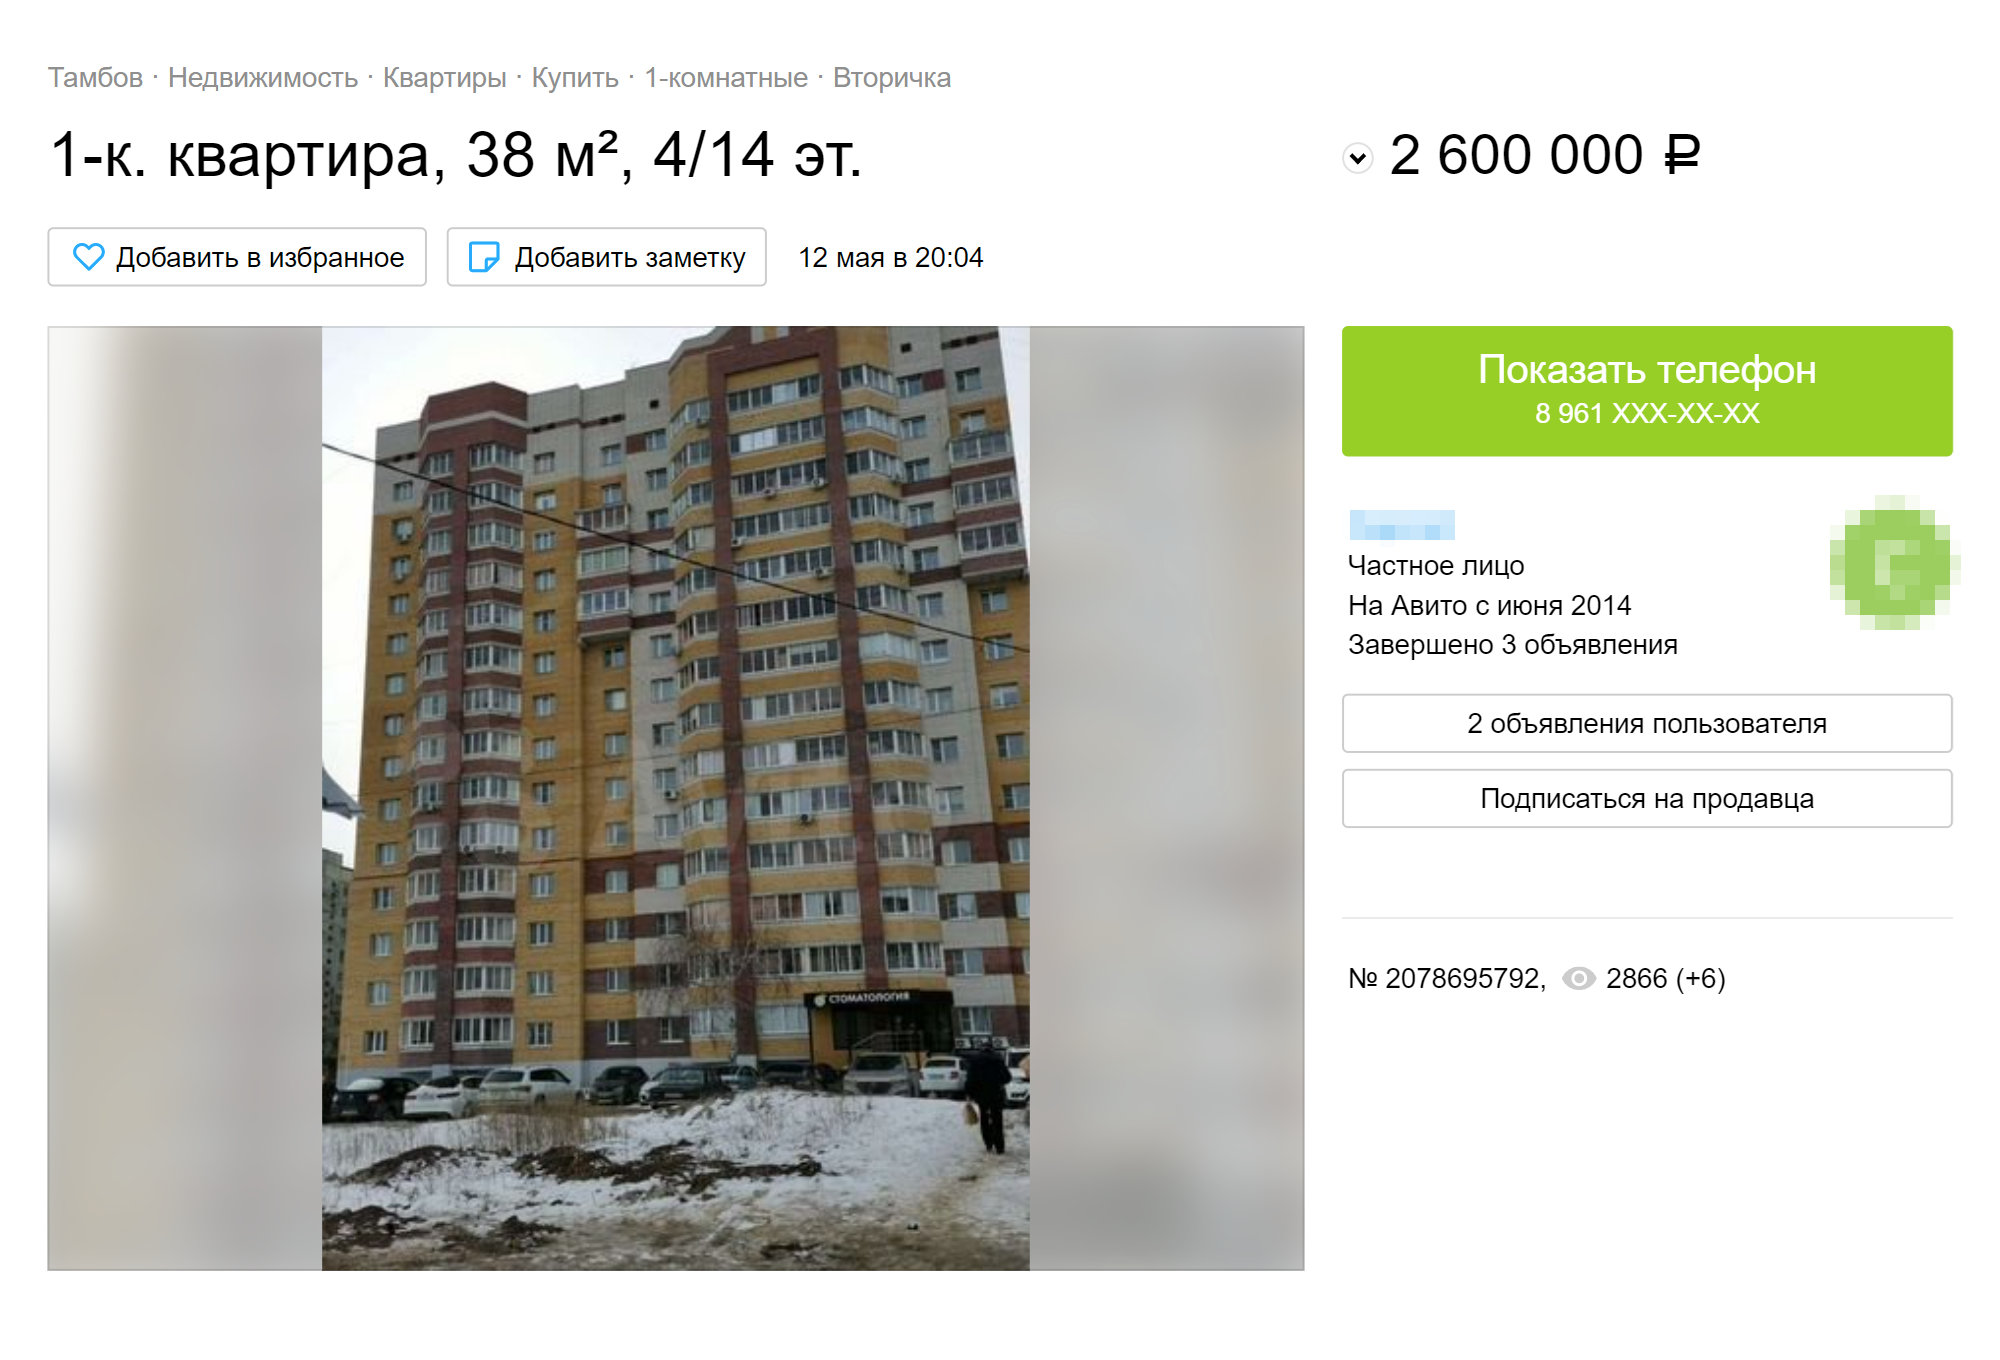 Однокомнатная квартира в Летке — 2,6 млн